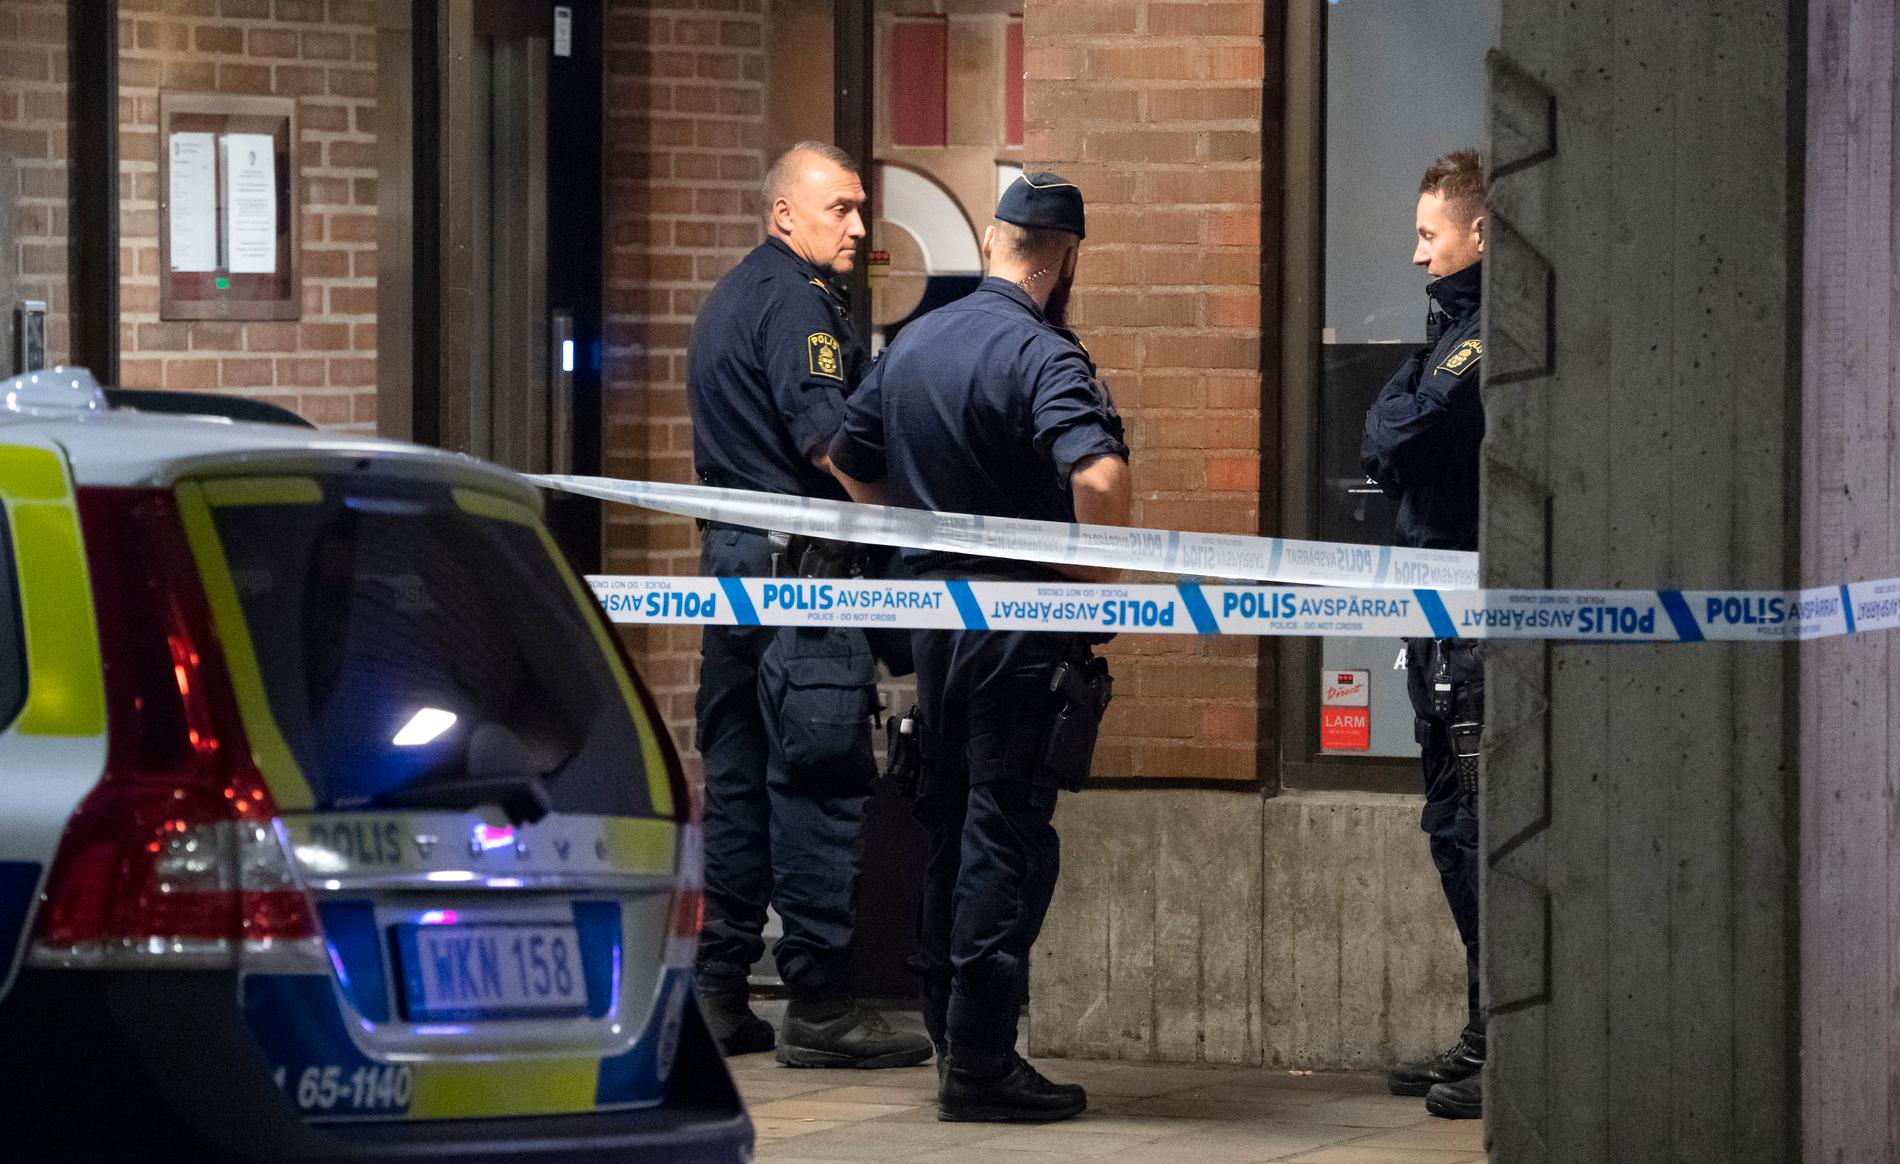 Natten till den 9 september förra året utlöstes en explosion i ett bostadshus i Malmö. Nu åtalas fyra personer för att ligga bakom dådet. Arkivbild.